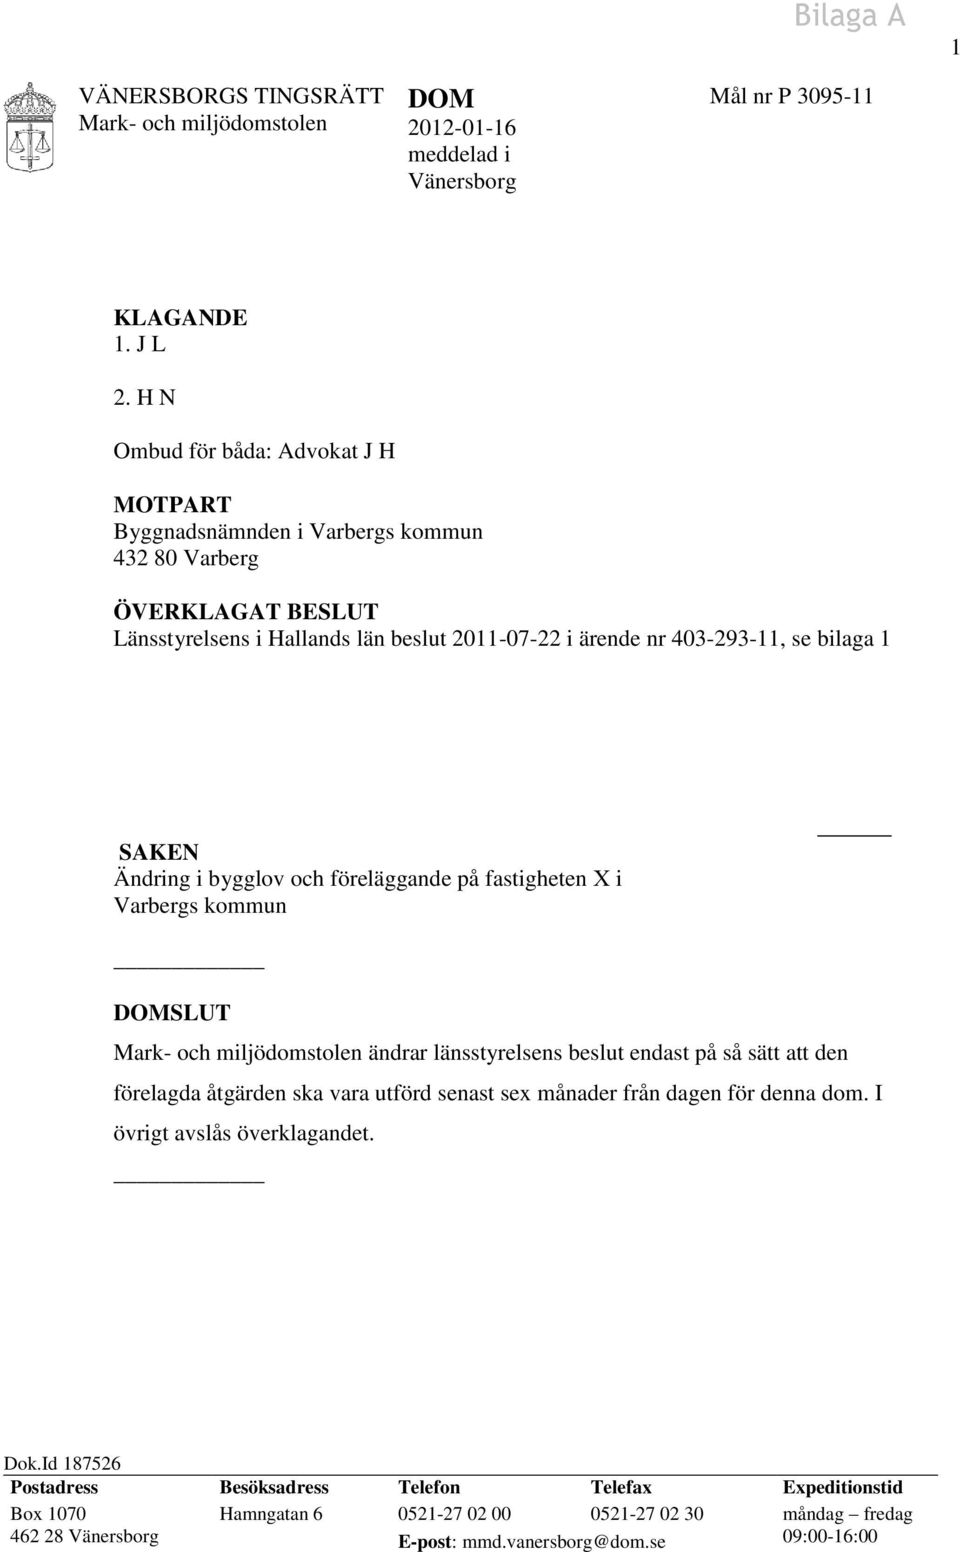 bilaga 1 SAKEN Ändring i bygglov och föreläggande på fastigheten X i Varbergs kommun DOMSLUT ändrar länsstyrelsens beslut endast på så sätt att den förelagda åtgärden ska vara utförd